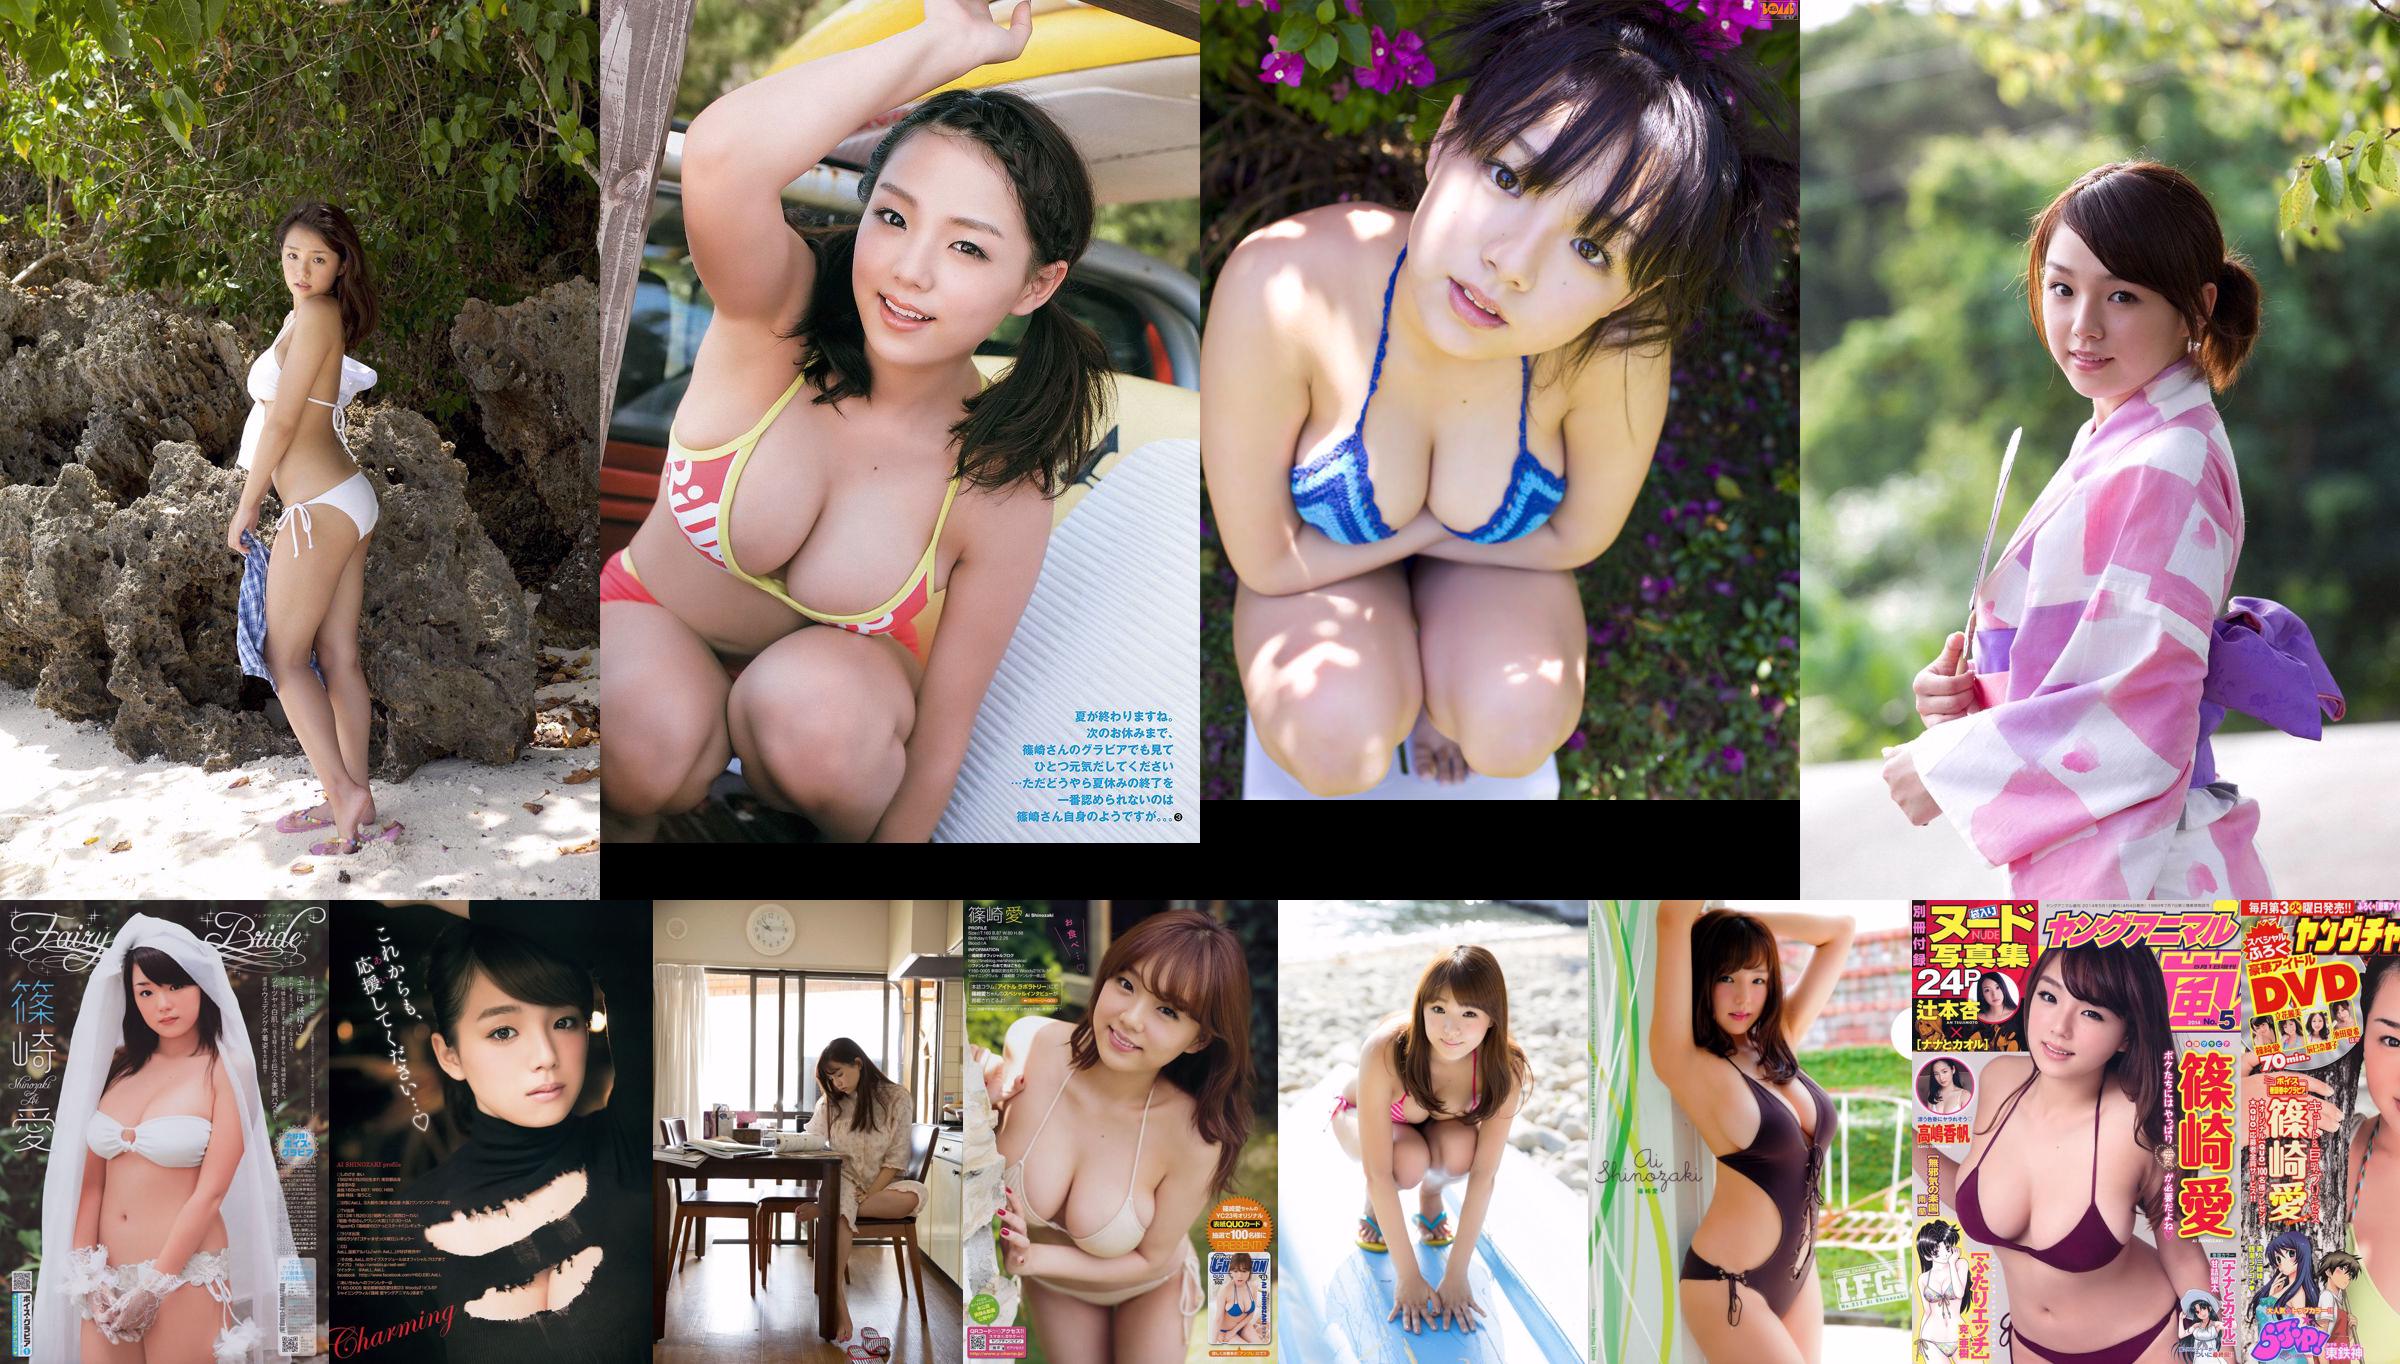 Sayuri Matsumura Kaori Matsumura Million Girls Z [Young Animal] 2014 No.14 Photograph No.00c802 Page 1